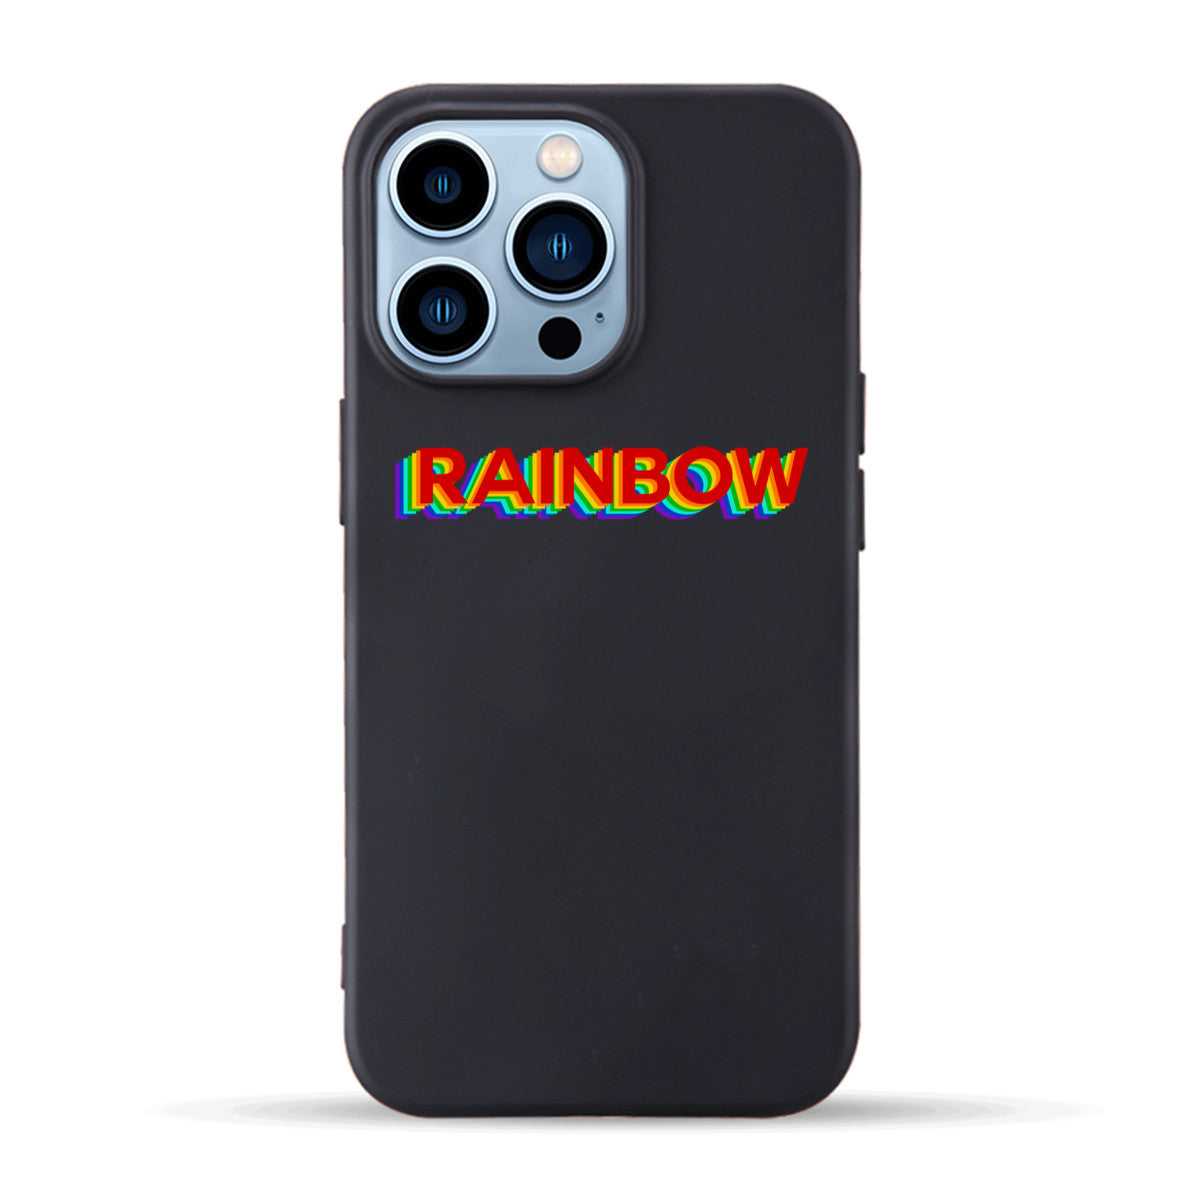 RAINBOW - iPhone Case